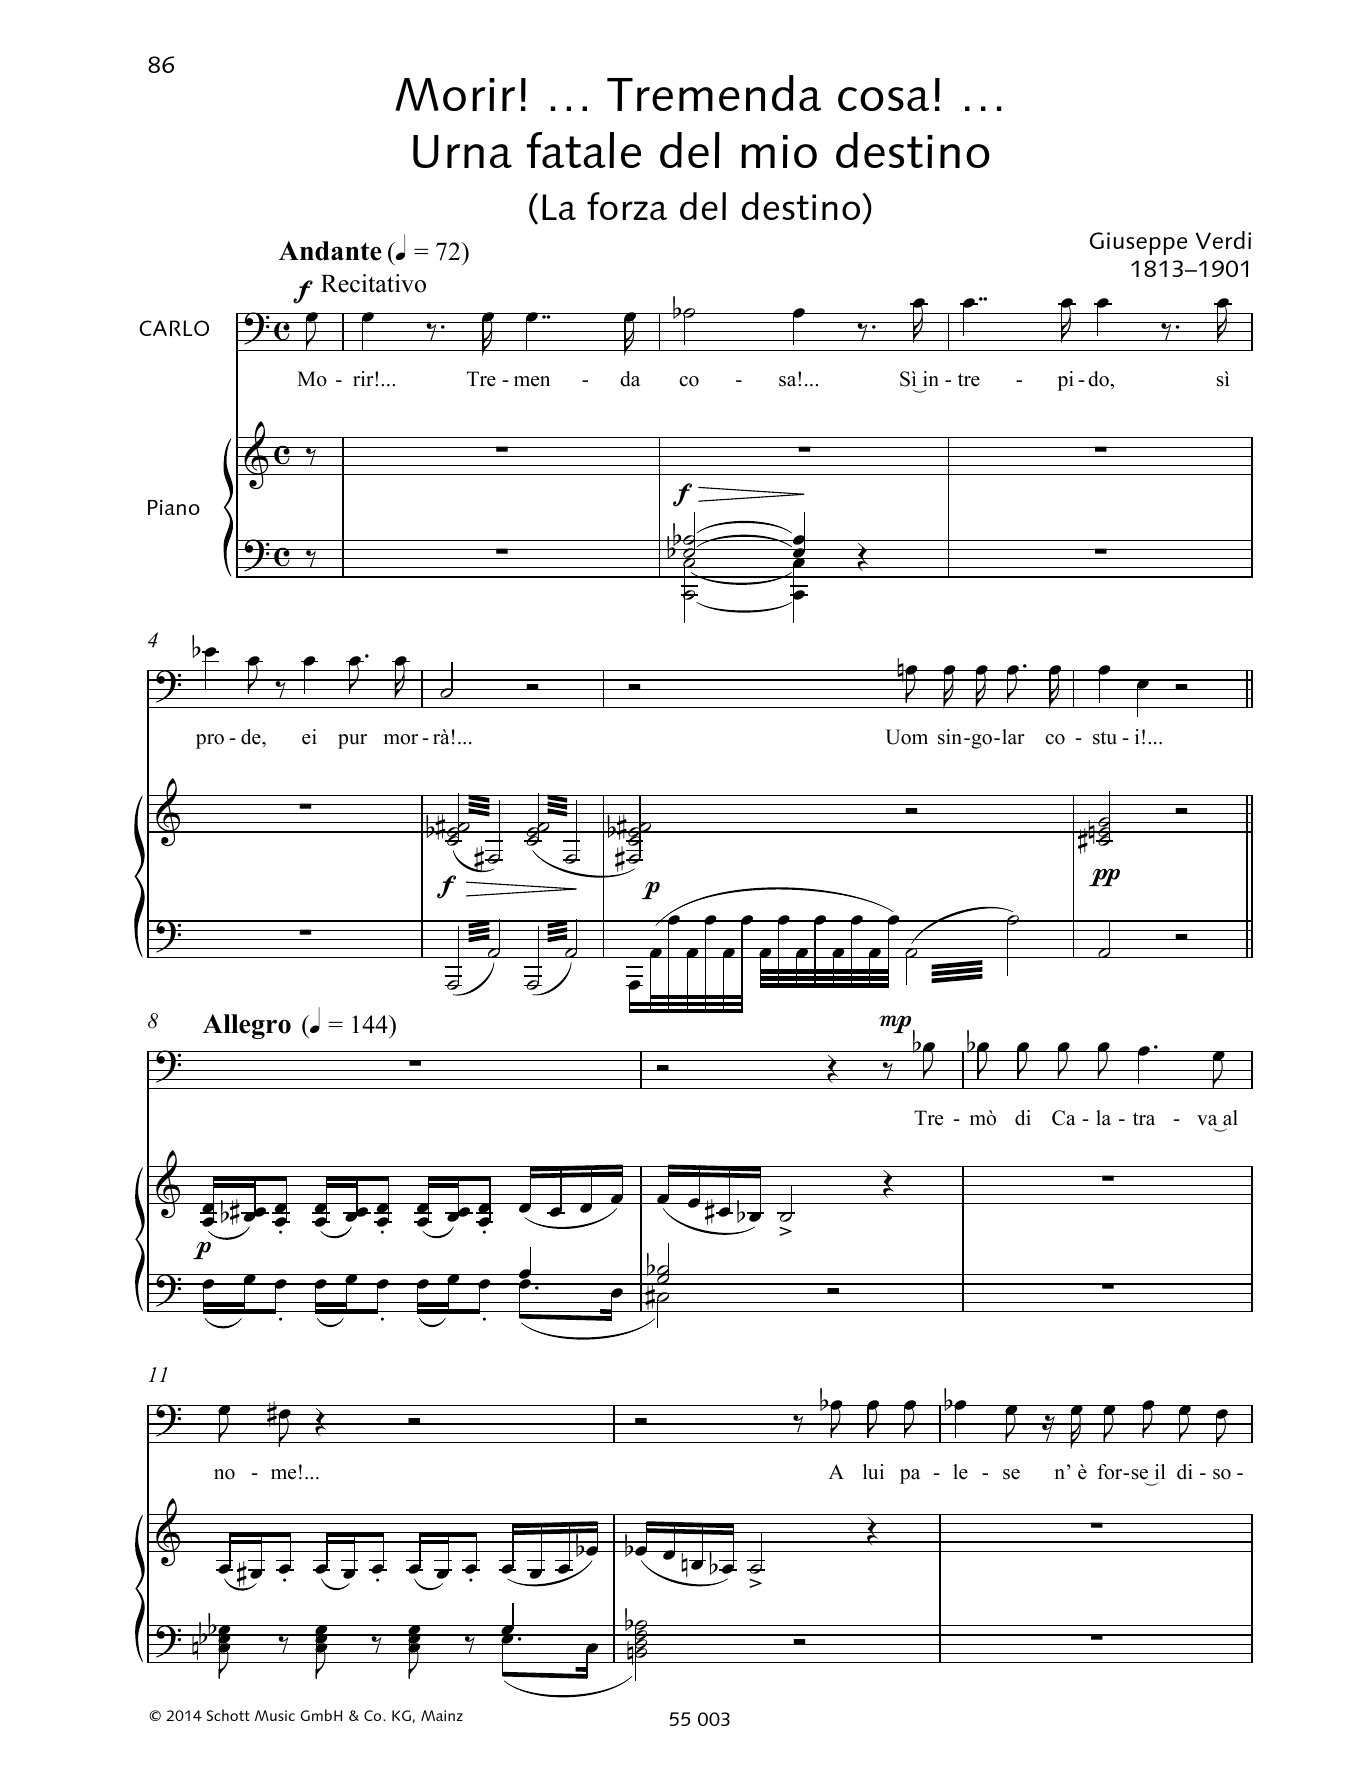 Download Francesca Licciarda Morir! ... Tremende cosa! ... Urna fatale del mio destino Sheet Music and learn how to play Piano & Vocal PDF digital score in minutes